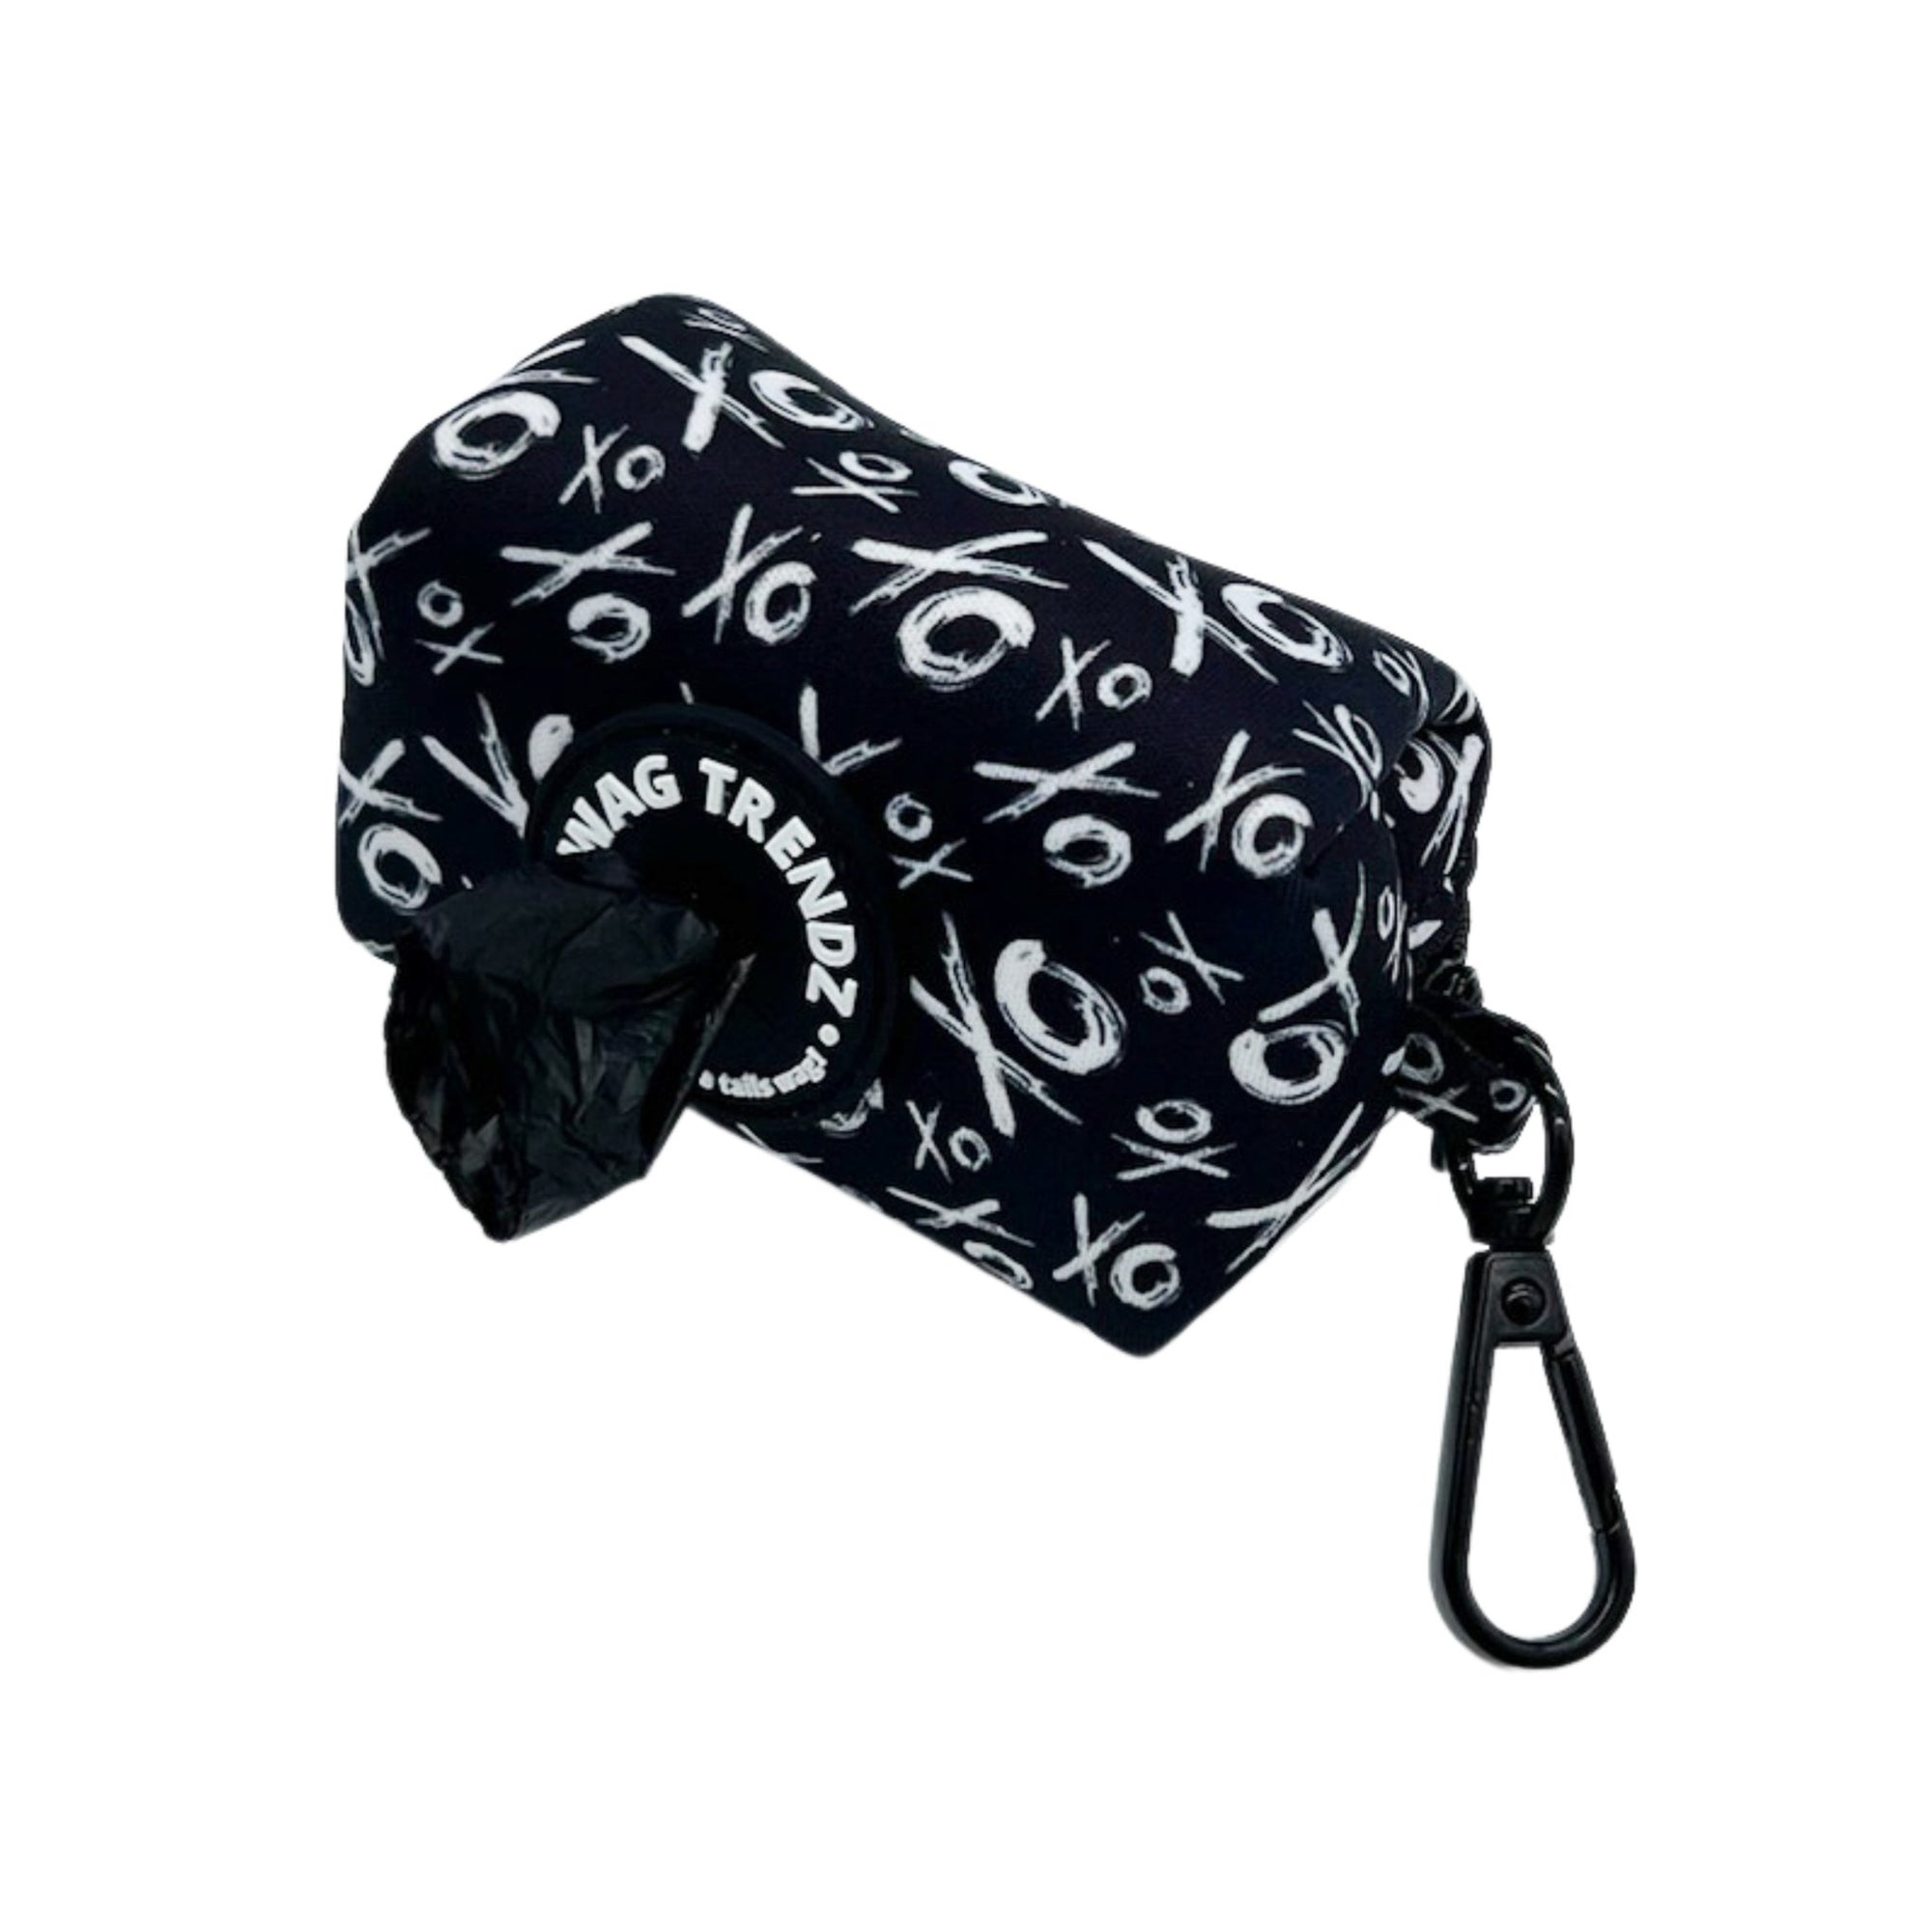 Dog Poo Bag Holder - black &amp; white XO pattern - Hugs &amp; Kisses XO - against white background - Wag Trendz